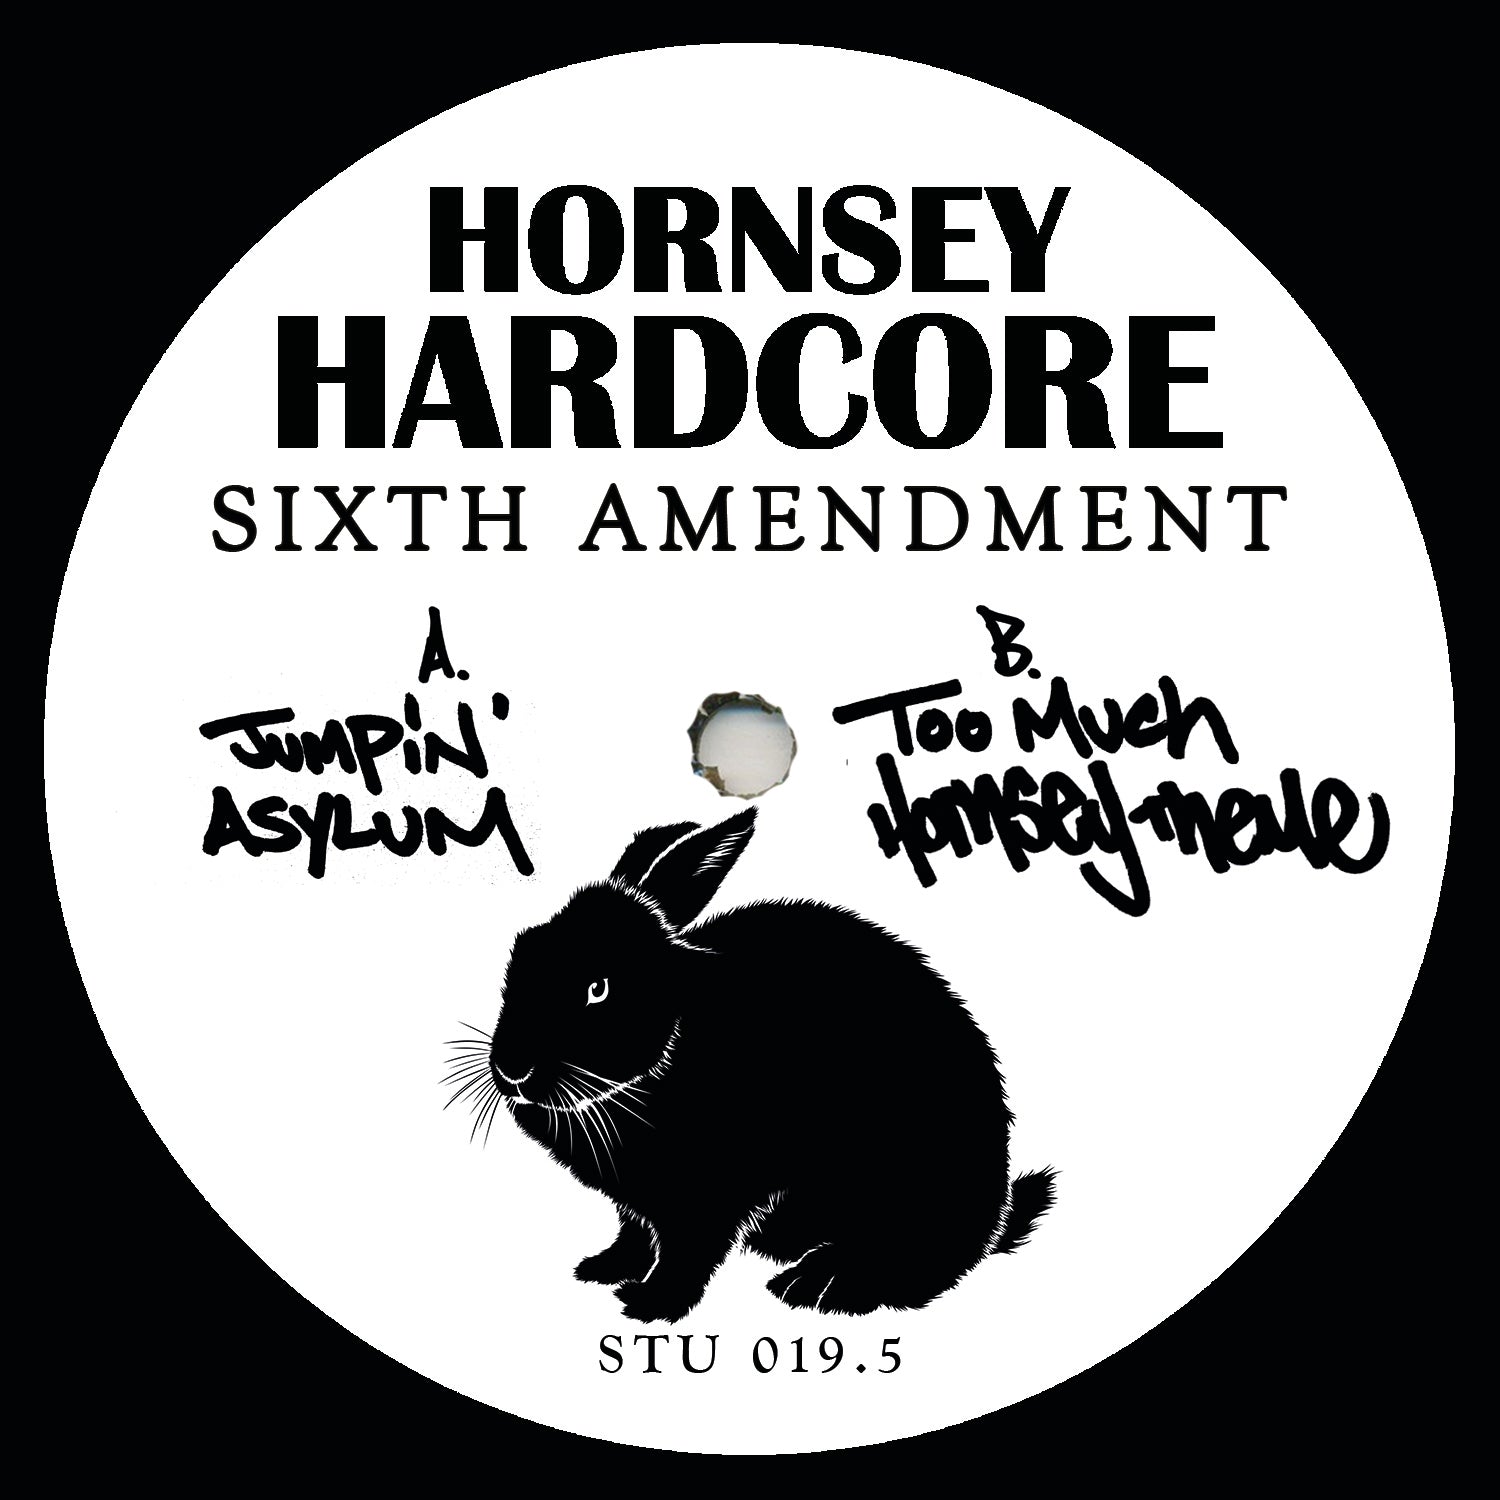 Hornsey Hardcore 'Sixth Amendment' 12"